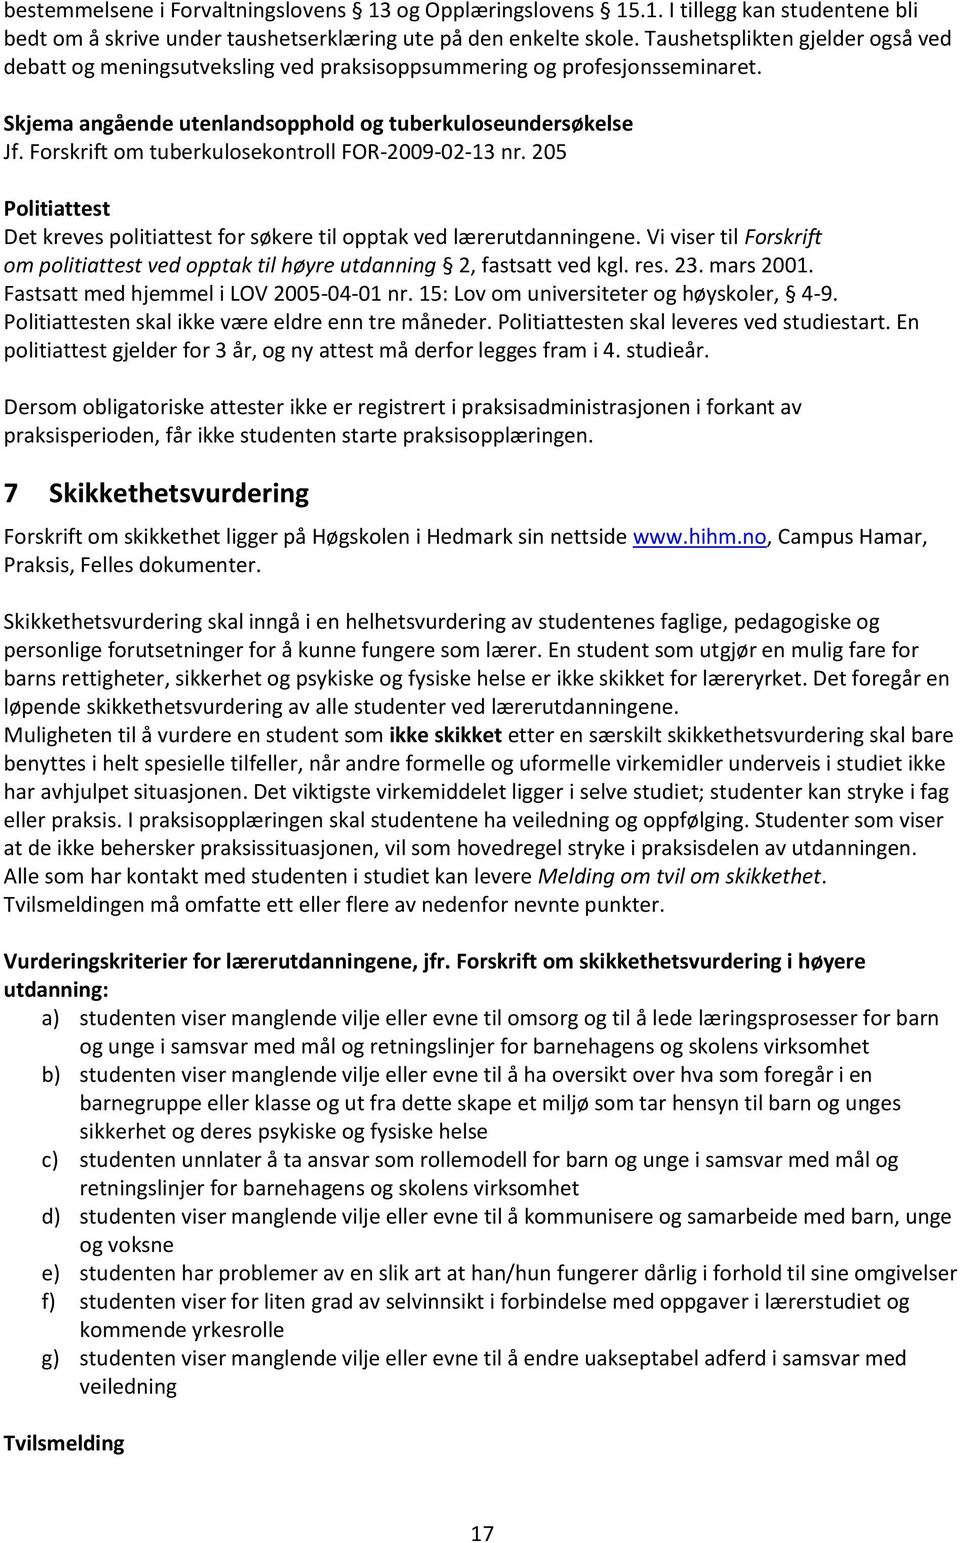 Forskrift om tuberkulosekontroll FOR-2009-02-13 nr. 205 Politiattest Det kreves politiattest for søkere til opptak ved lærerutdanningene.